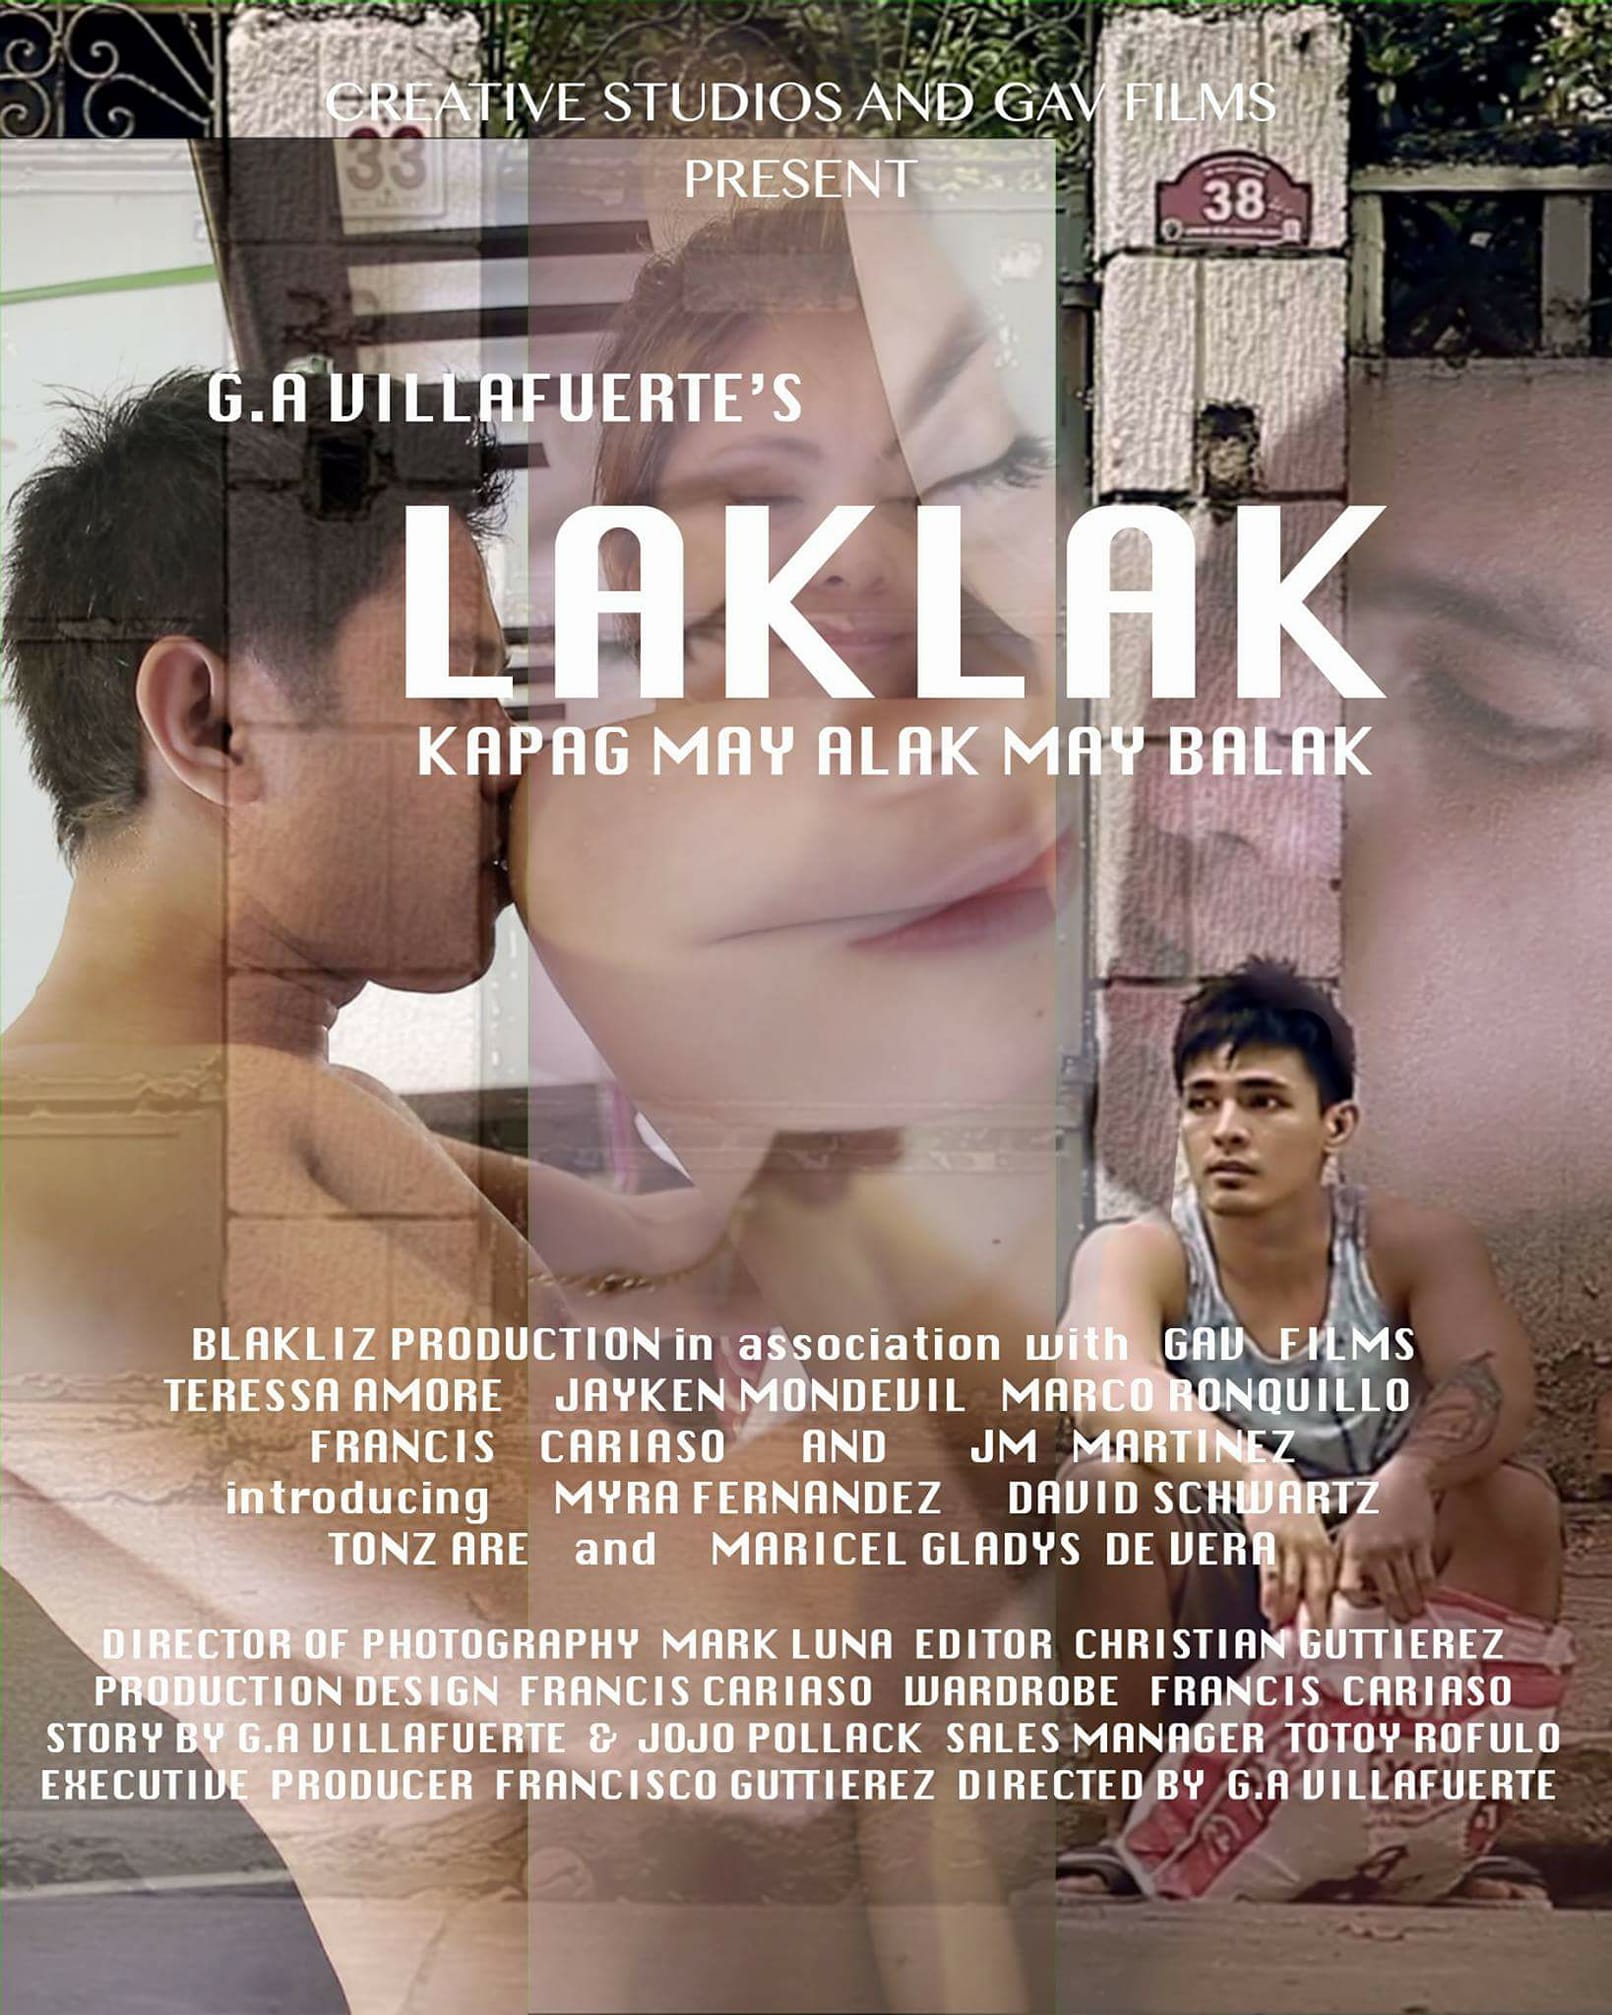 Laklak: Kapag may alak may balak (2018) - IMDb